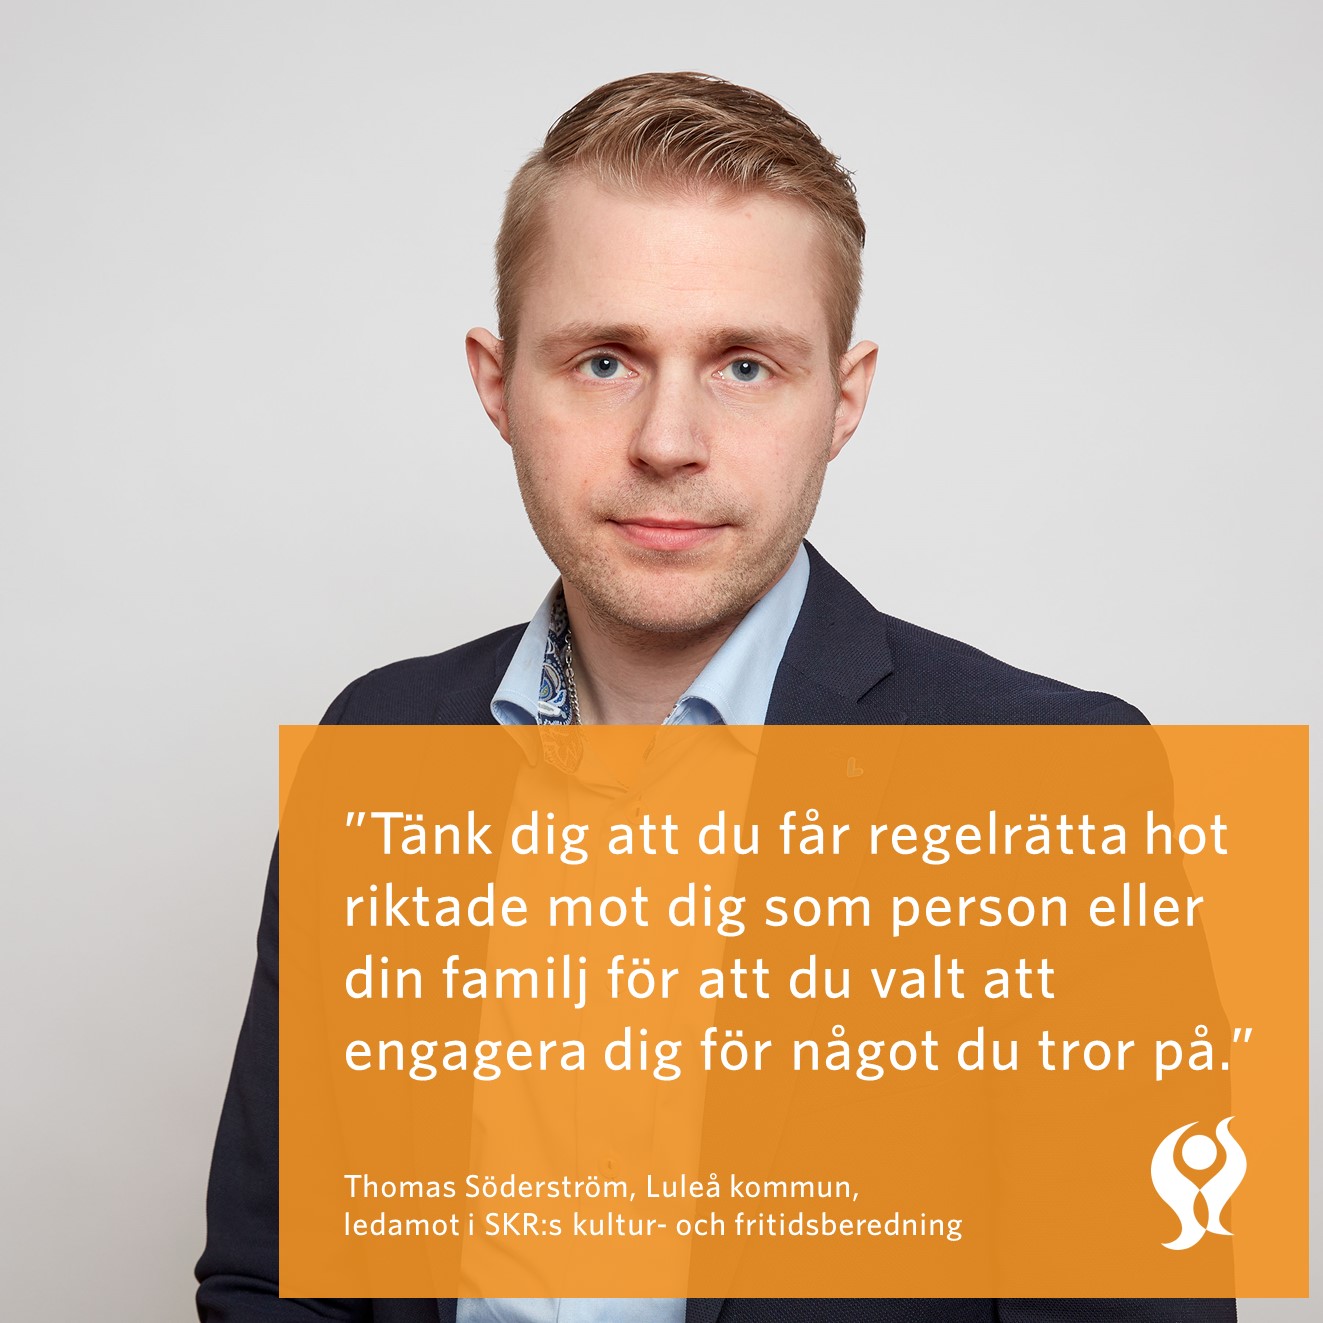 Förtroendevald Thomas Söderström med citat om att #ståuppmothatet